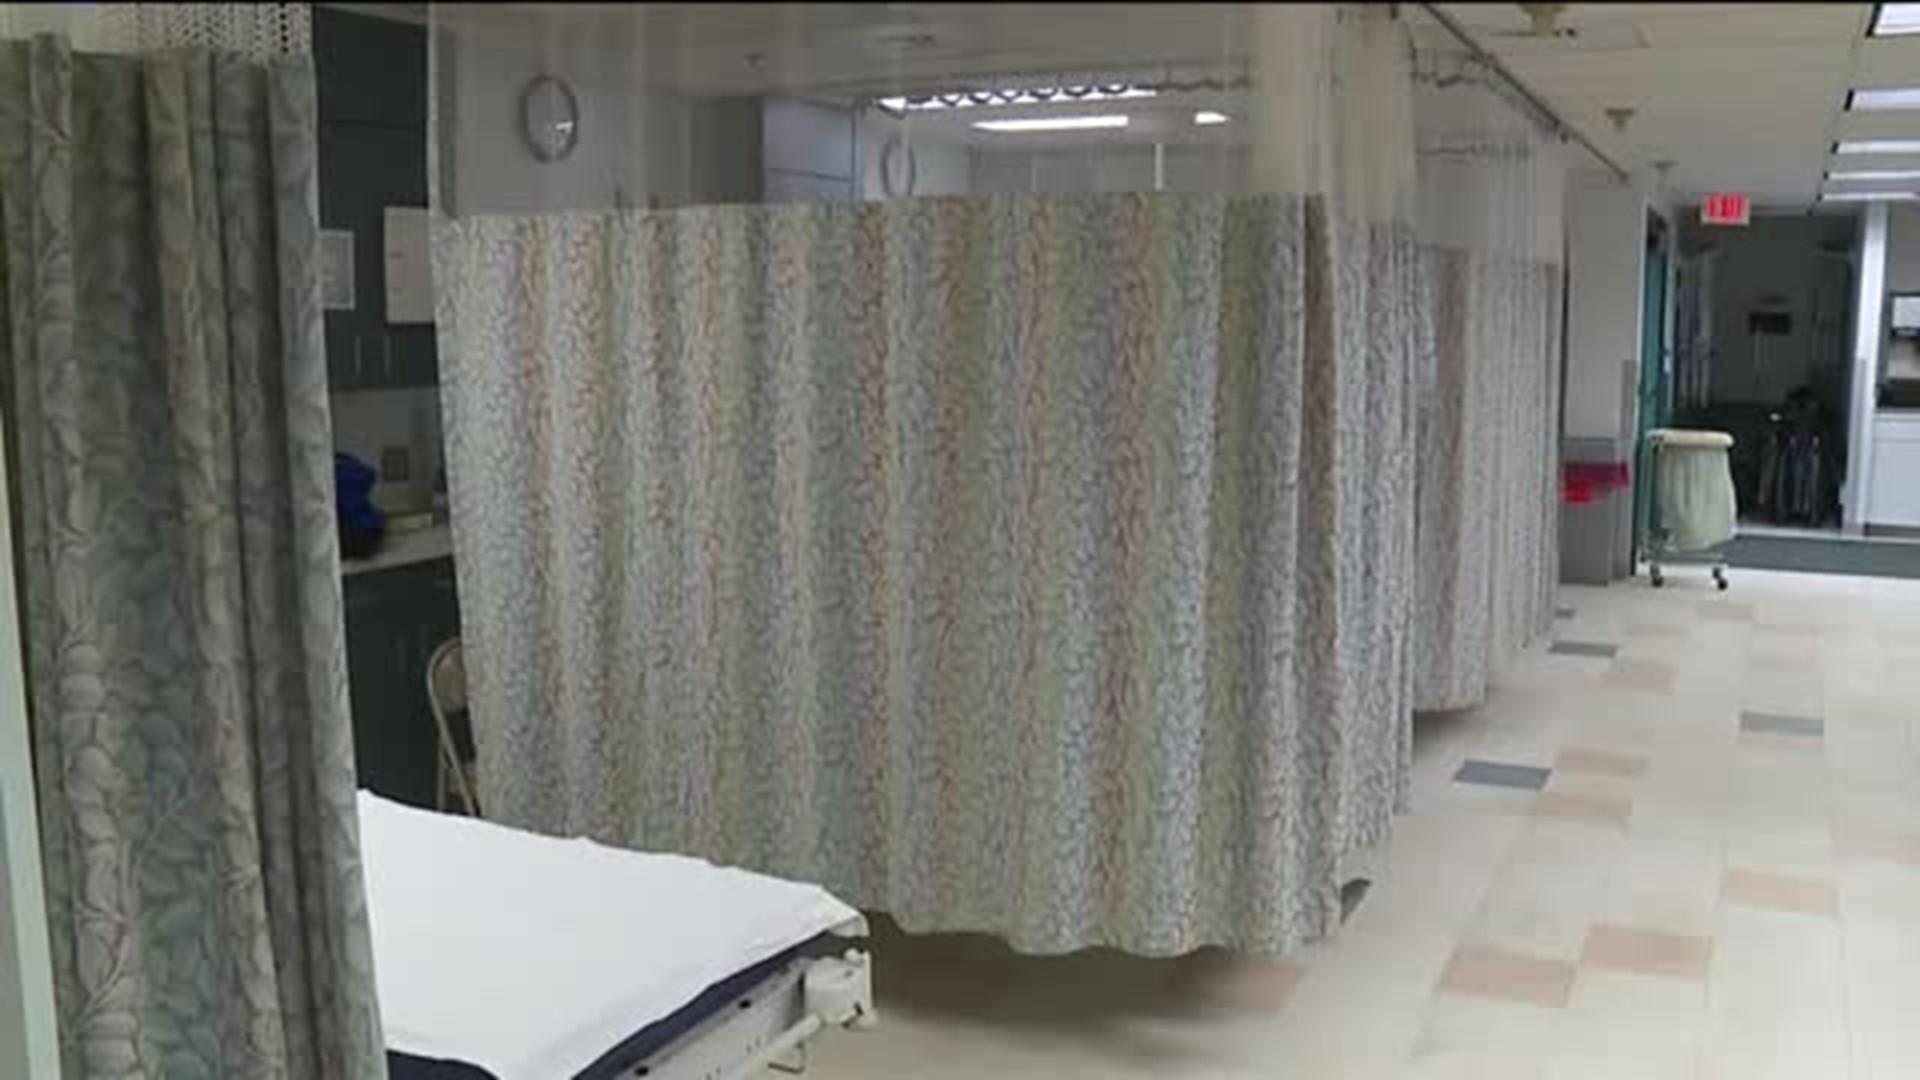 Flu Patients Fill Hospital in Lehighton